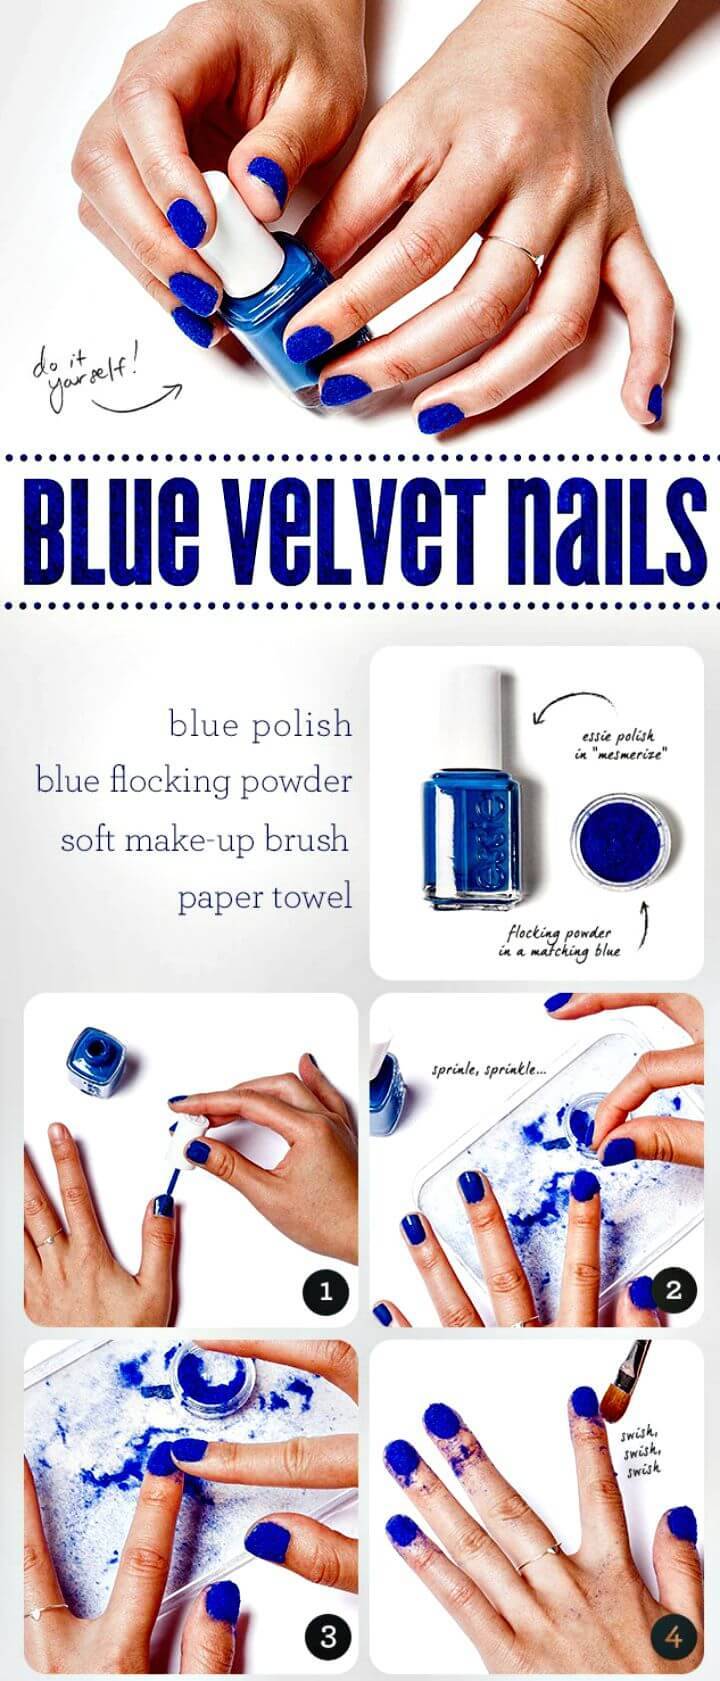 Easy DIY Blue Velvet Nails - Easy Instructions Tutorial